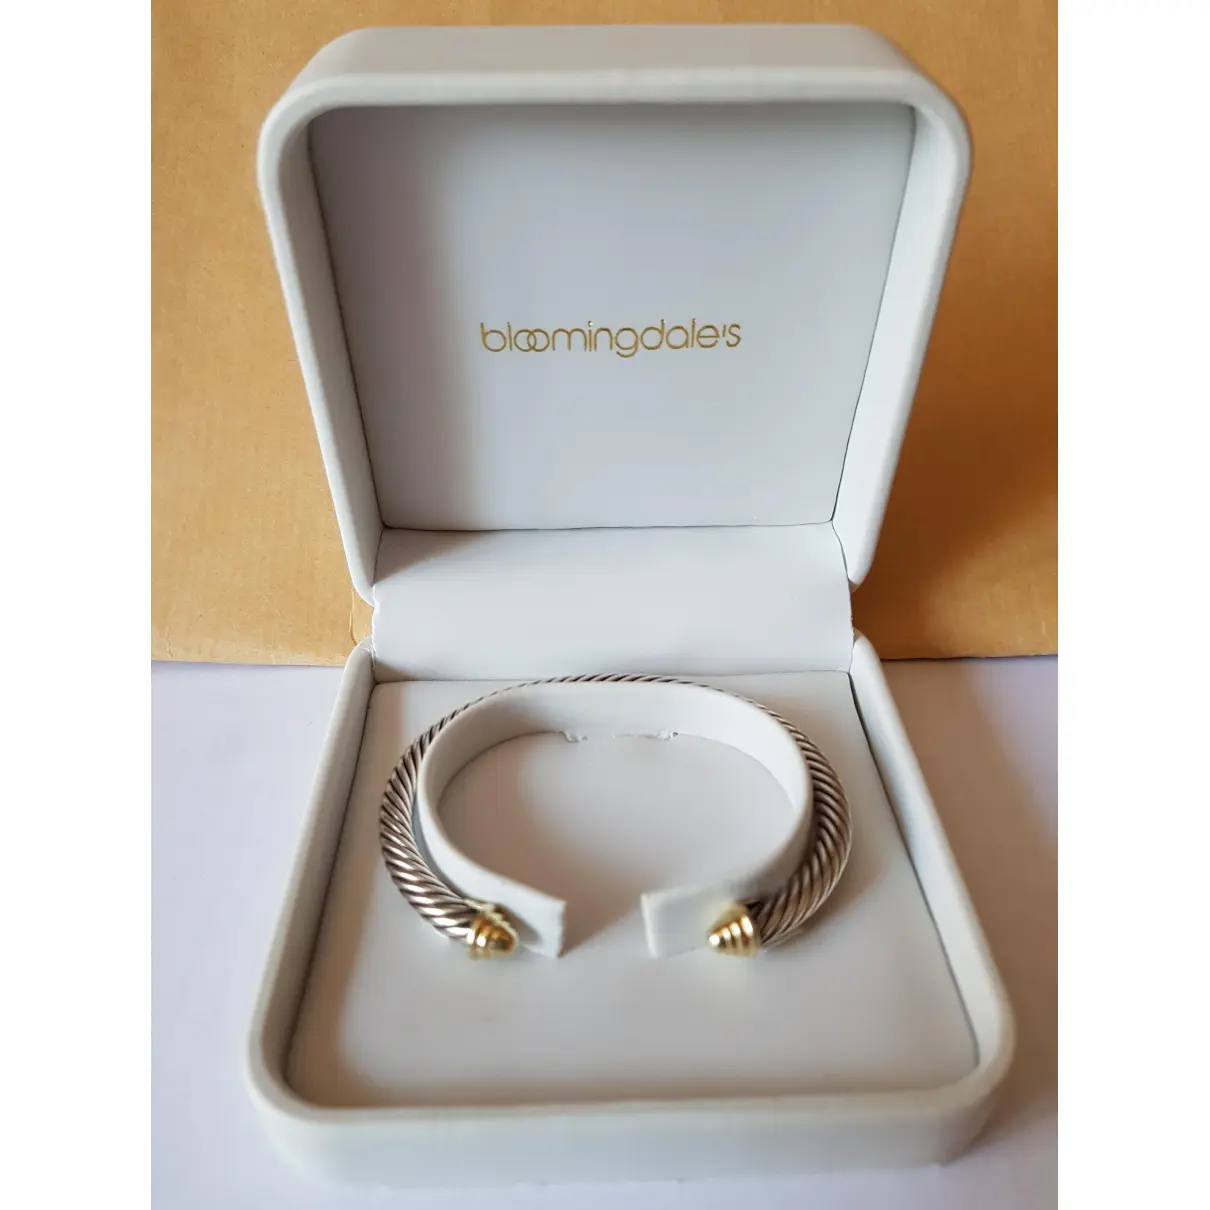 Buy Bloomingdales Silver bracelet online